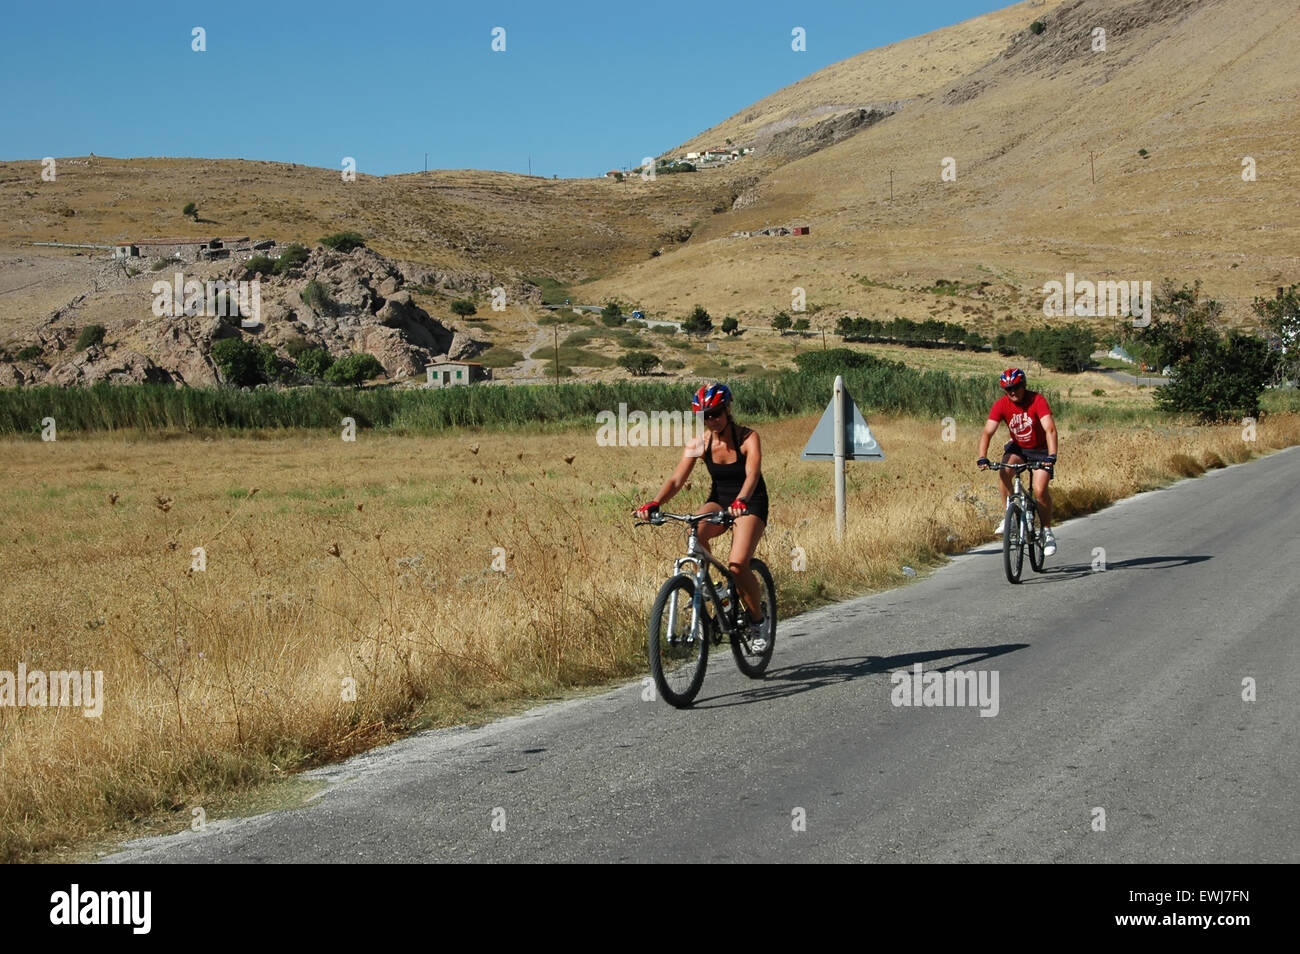 Britische Touristen Radfahren auf der Straße von Avlonas Bay Blick auf die umliegende Landschaft. Lemnos oder Limnos Insel Griechenlands. Stockfoto